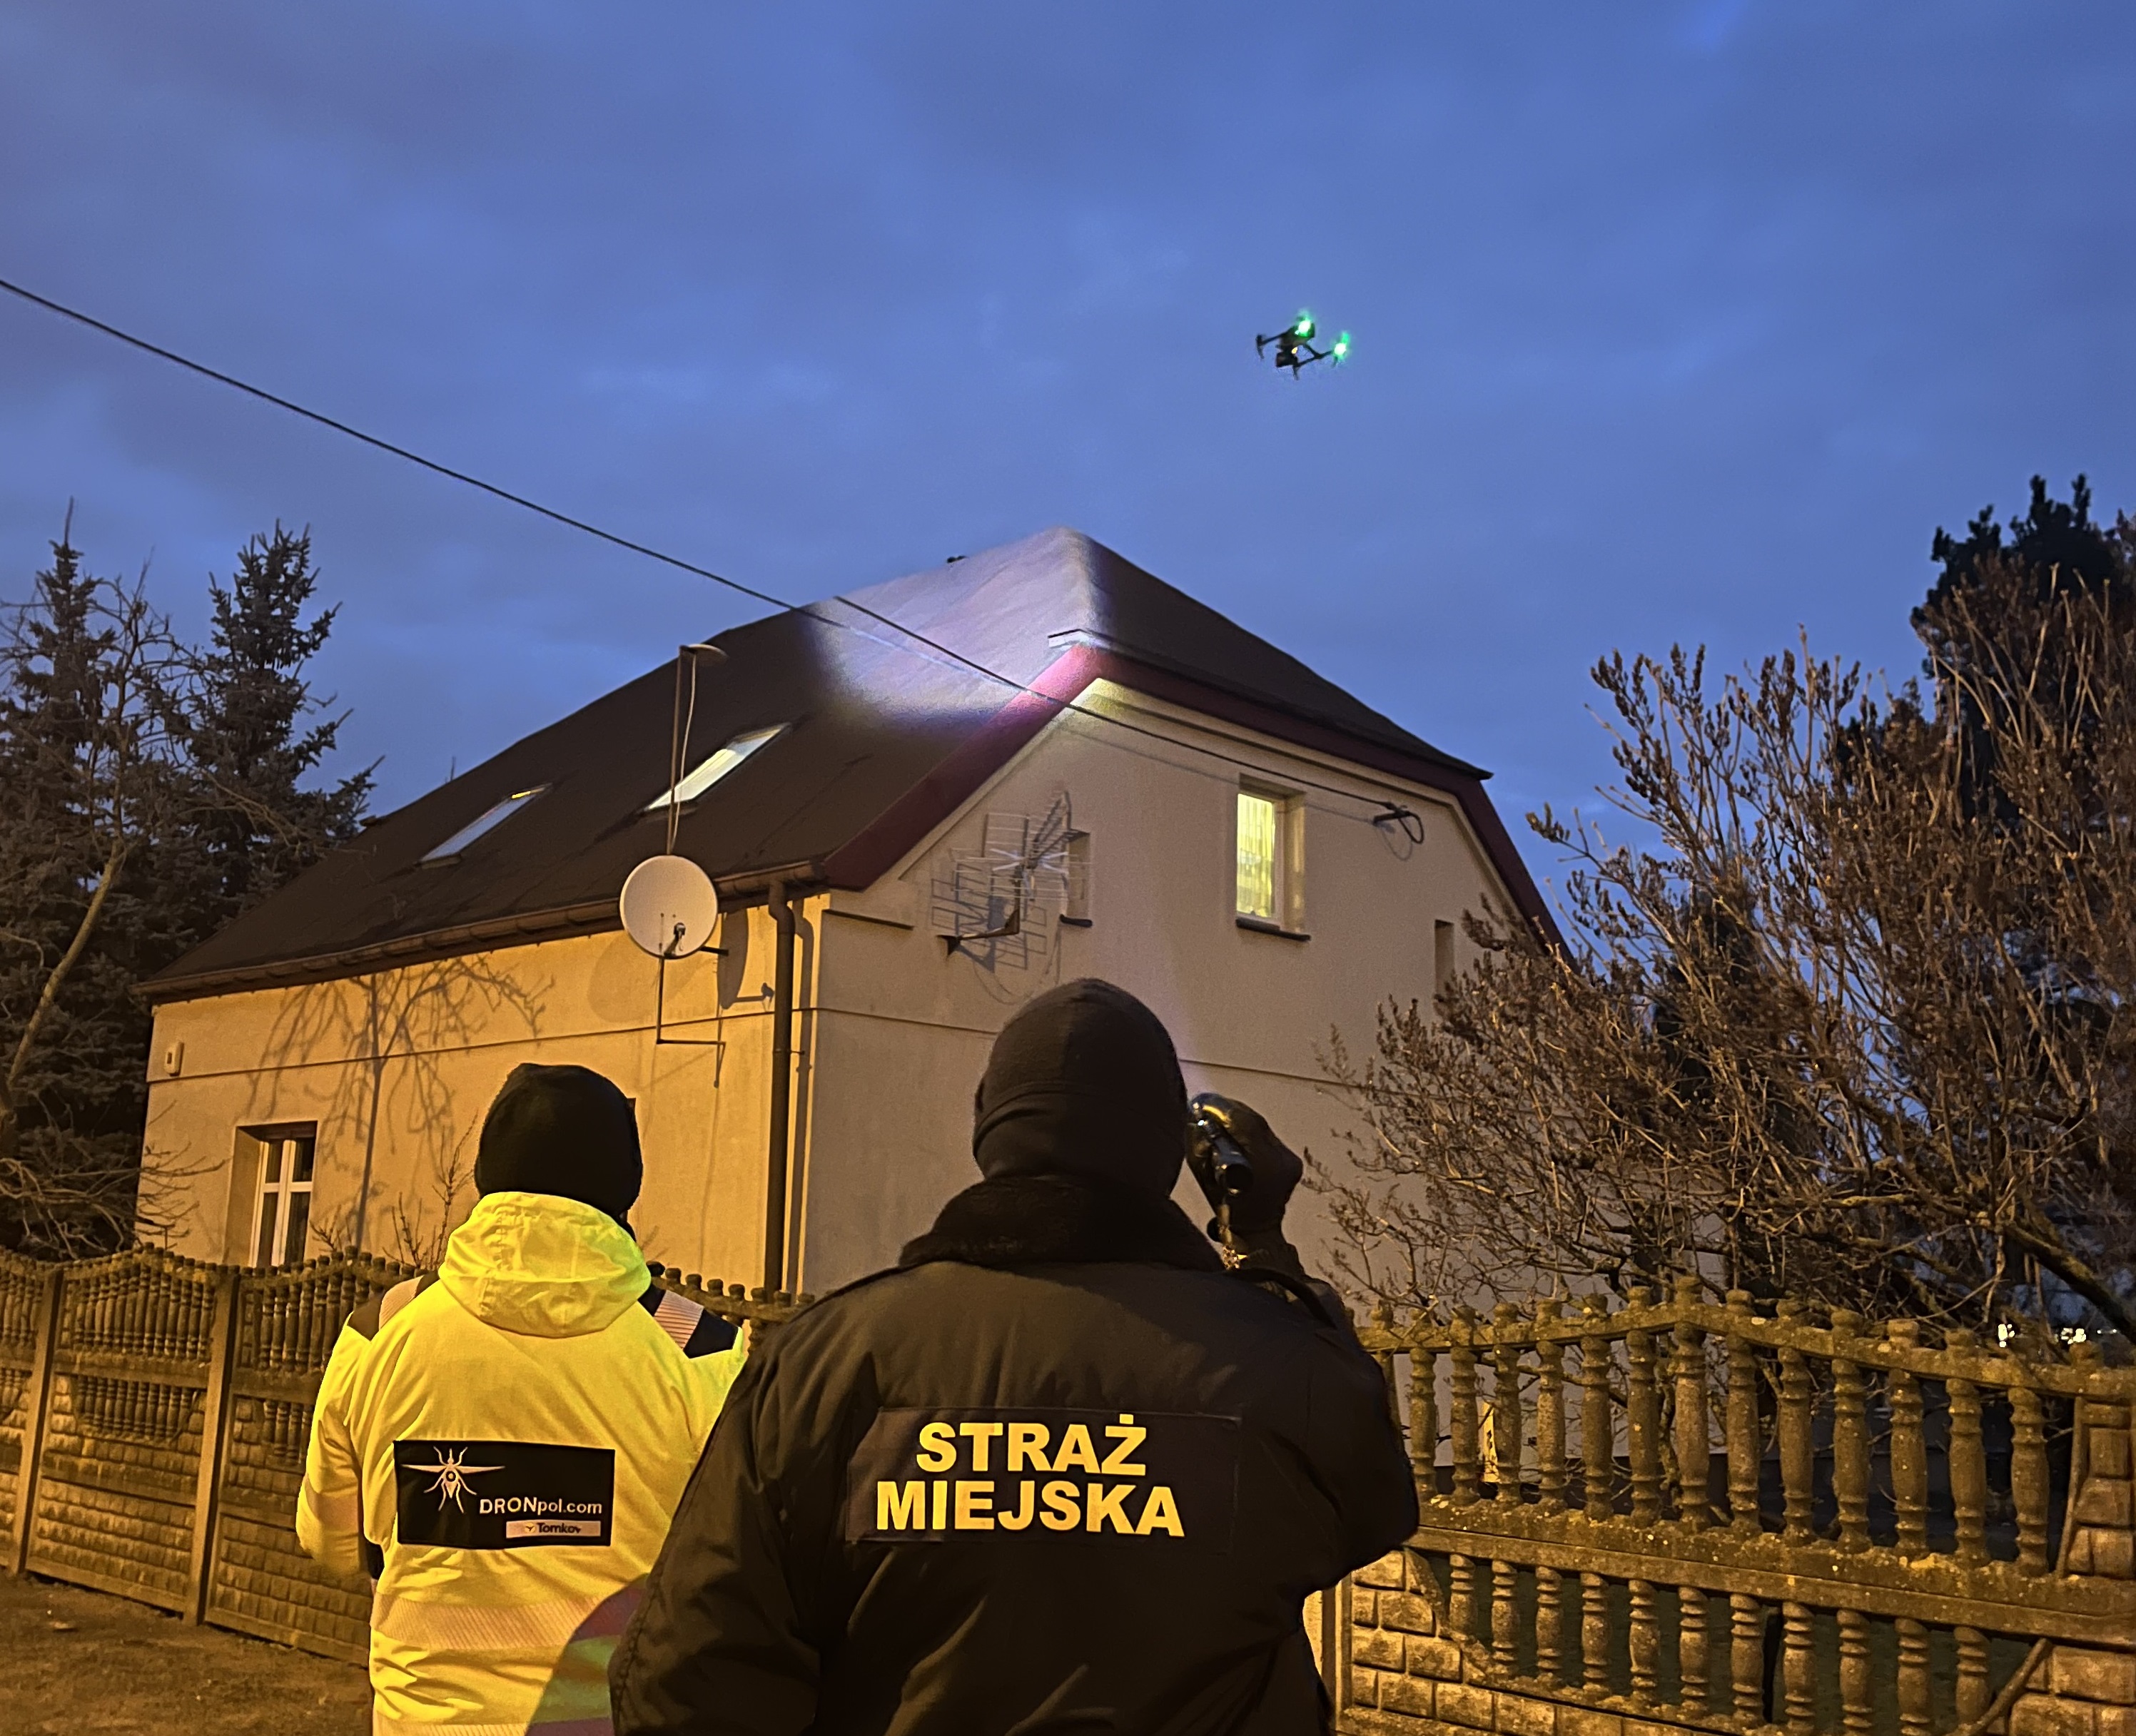 Zdjęcie przedstawia strażnika miejskiego, osobę obsługującą drona oraz drona unoszącego się nad dachem domu